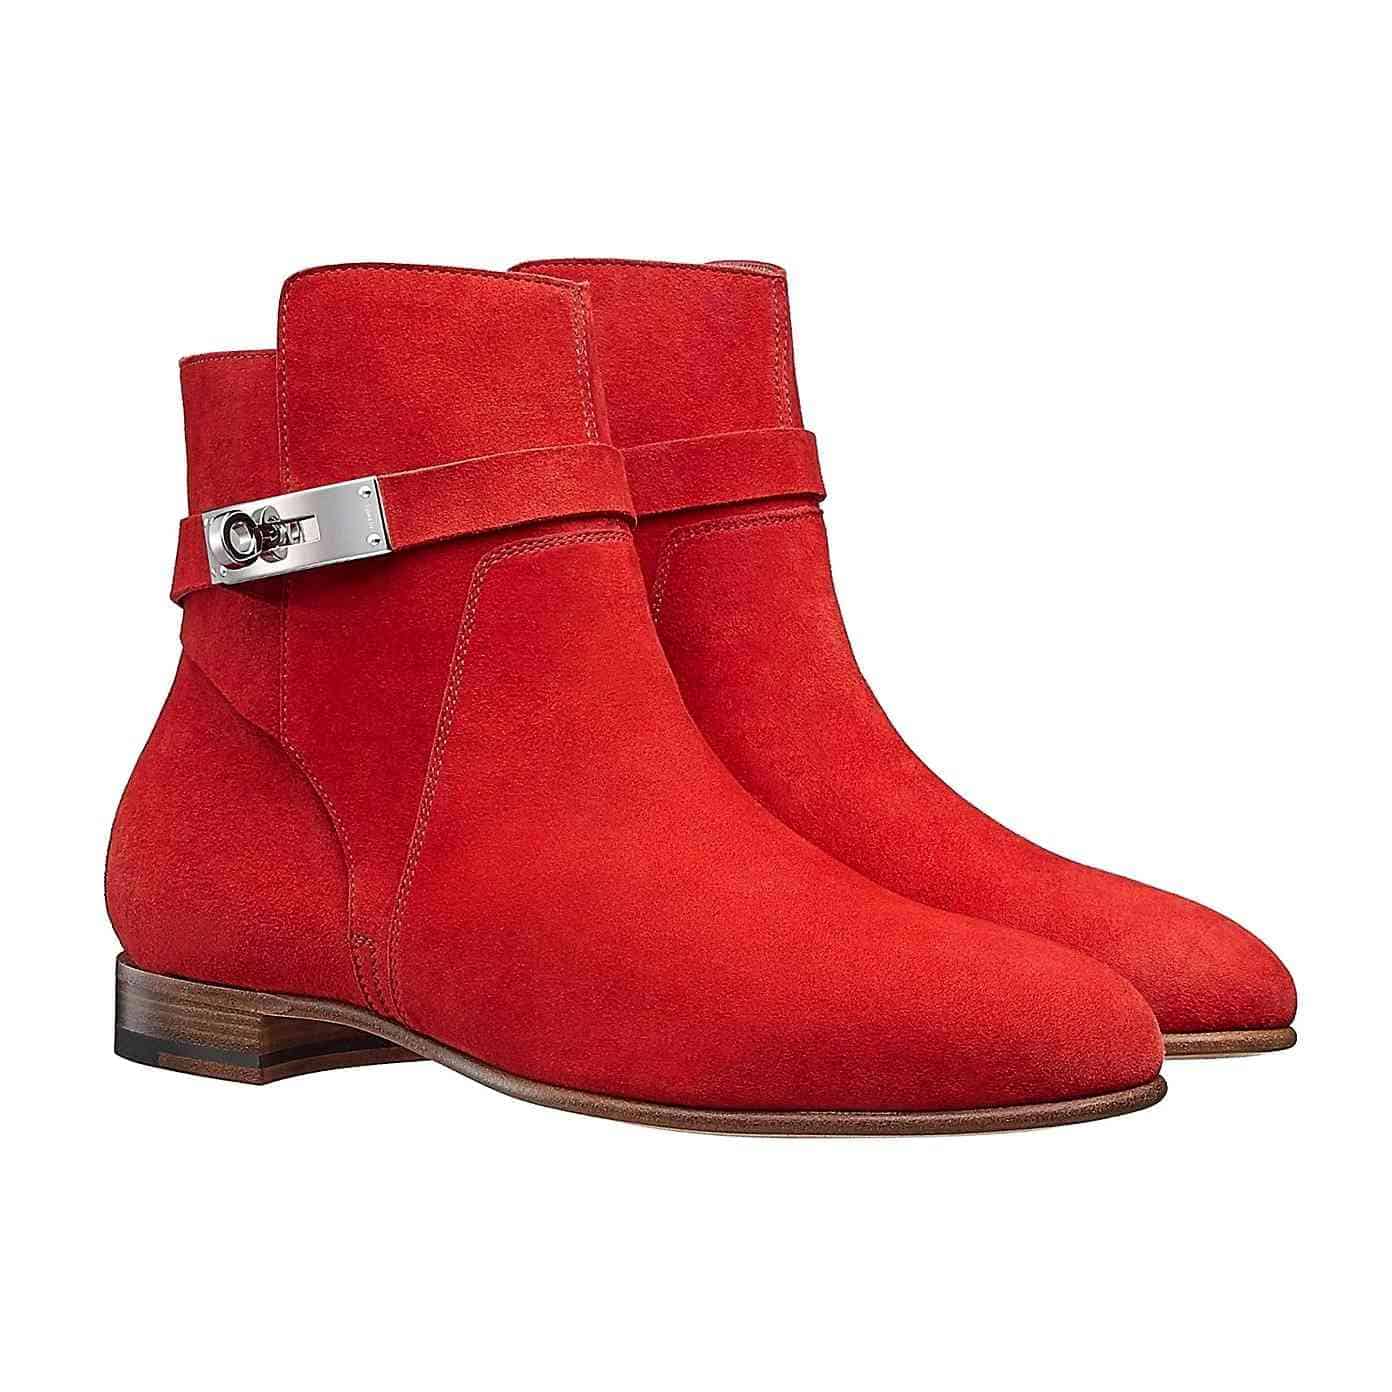 Giày nữ Hermes authentic mã H162134Z-7H355 màu đỏ rực rỡ.